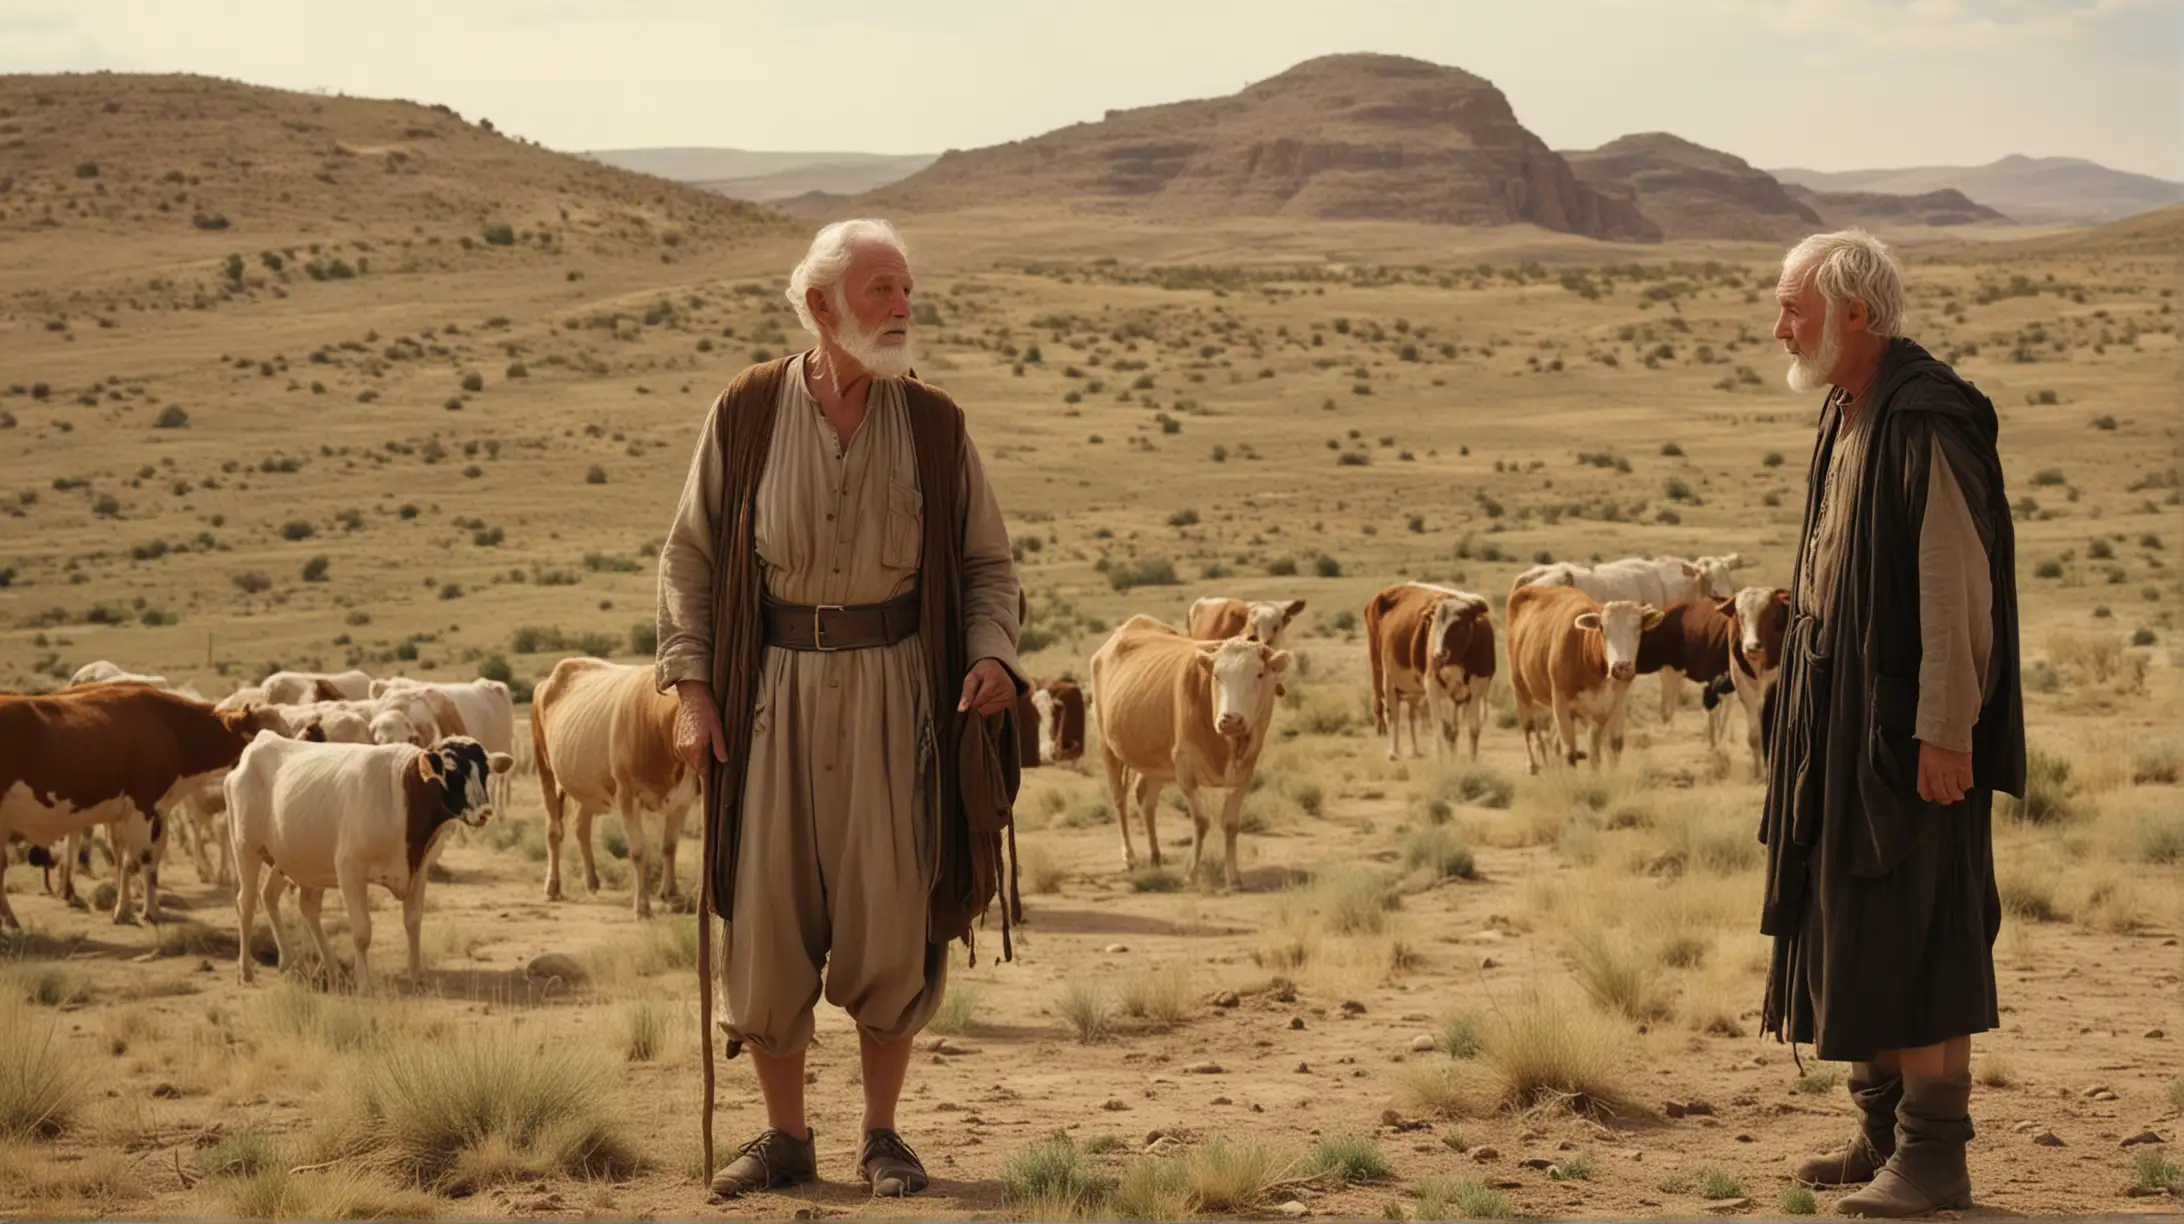 Biblical Era Conversations Among Elders in Desert Hill Field